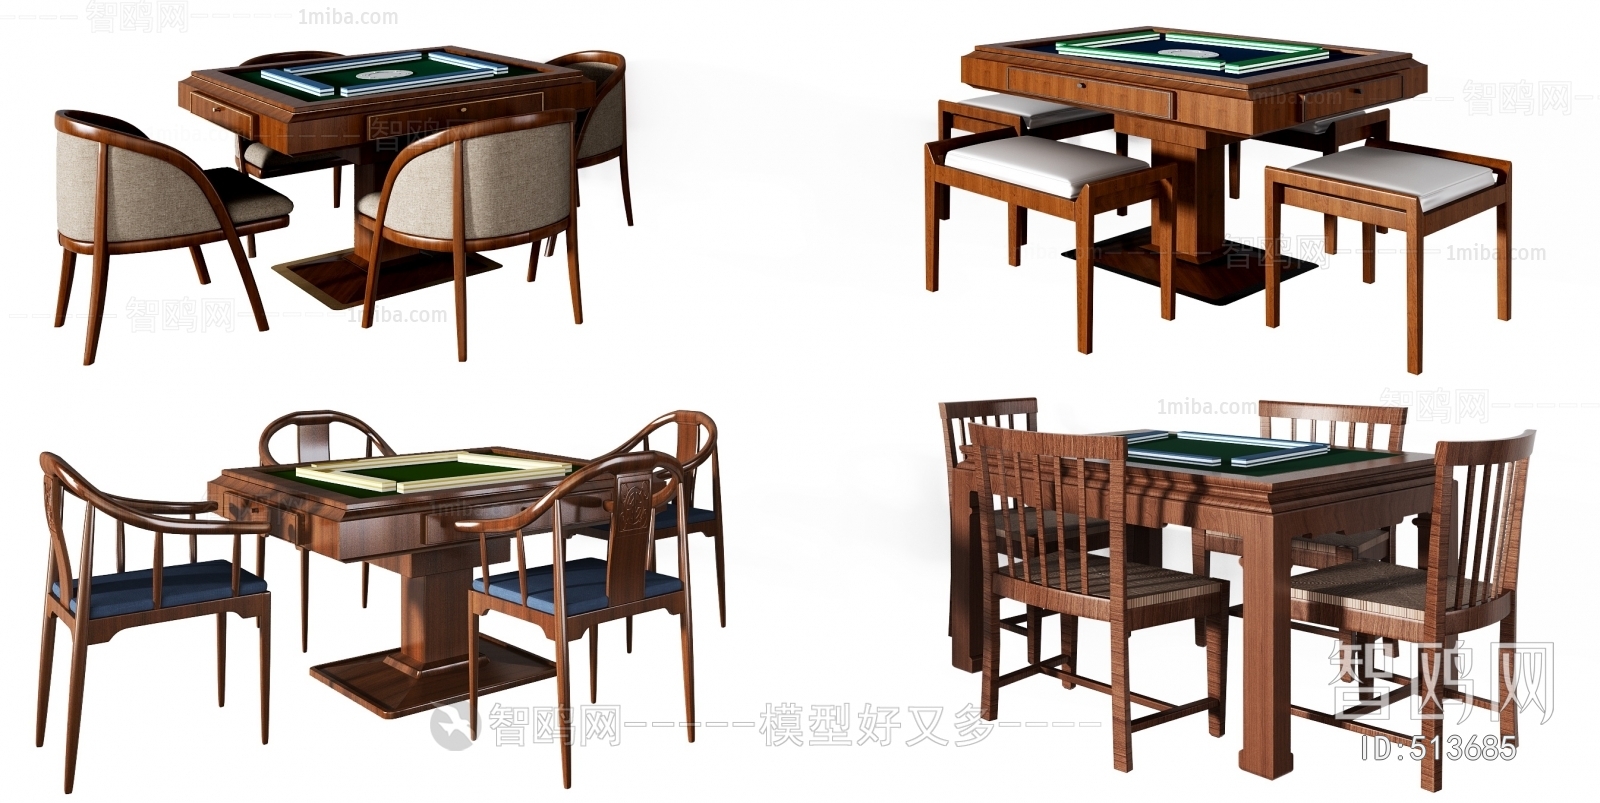 新中式麻将桌组合